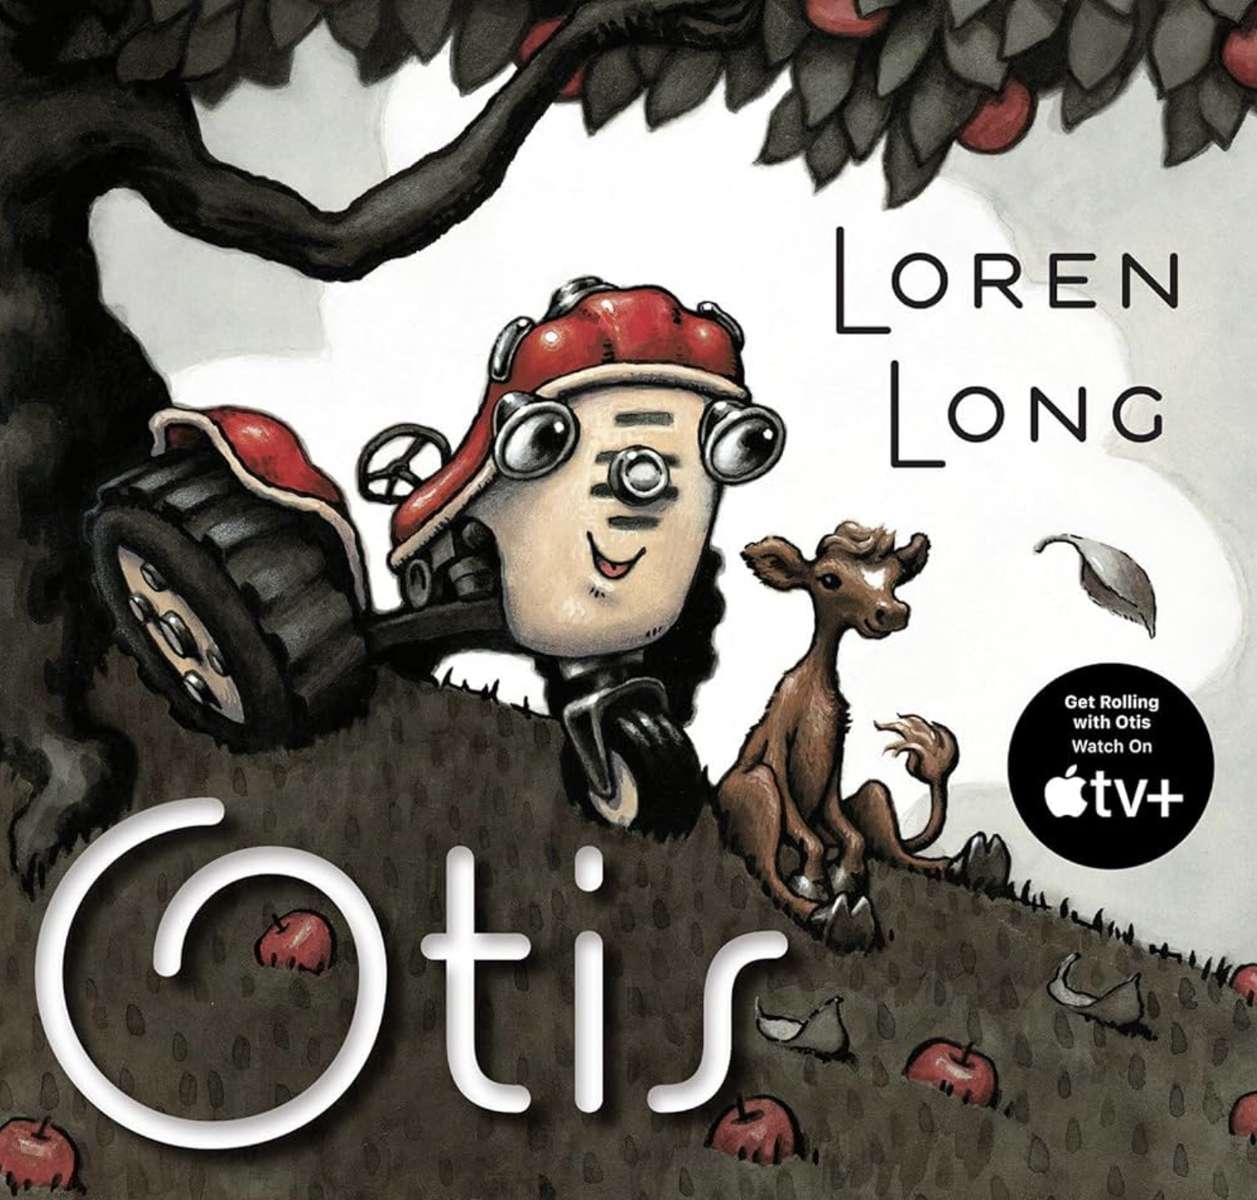 Otis (Copertă de carte) ❤️❤️❤️❤️❤️❤️❤️ jigsaw puzzle online